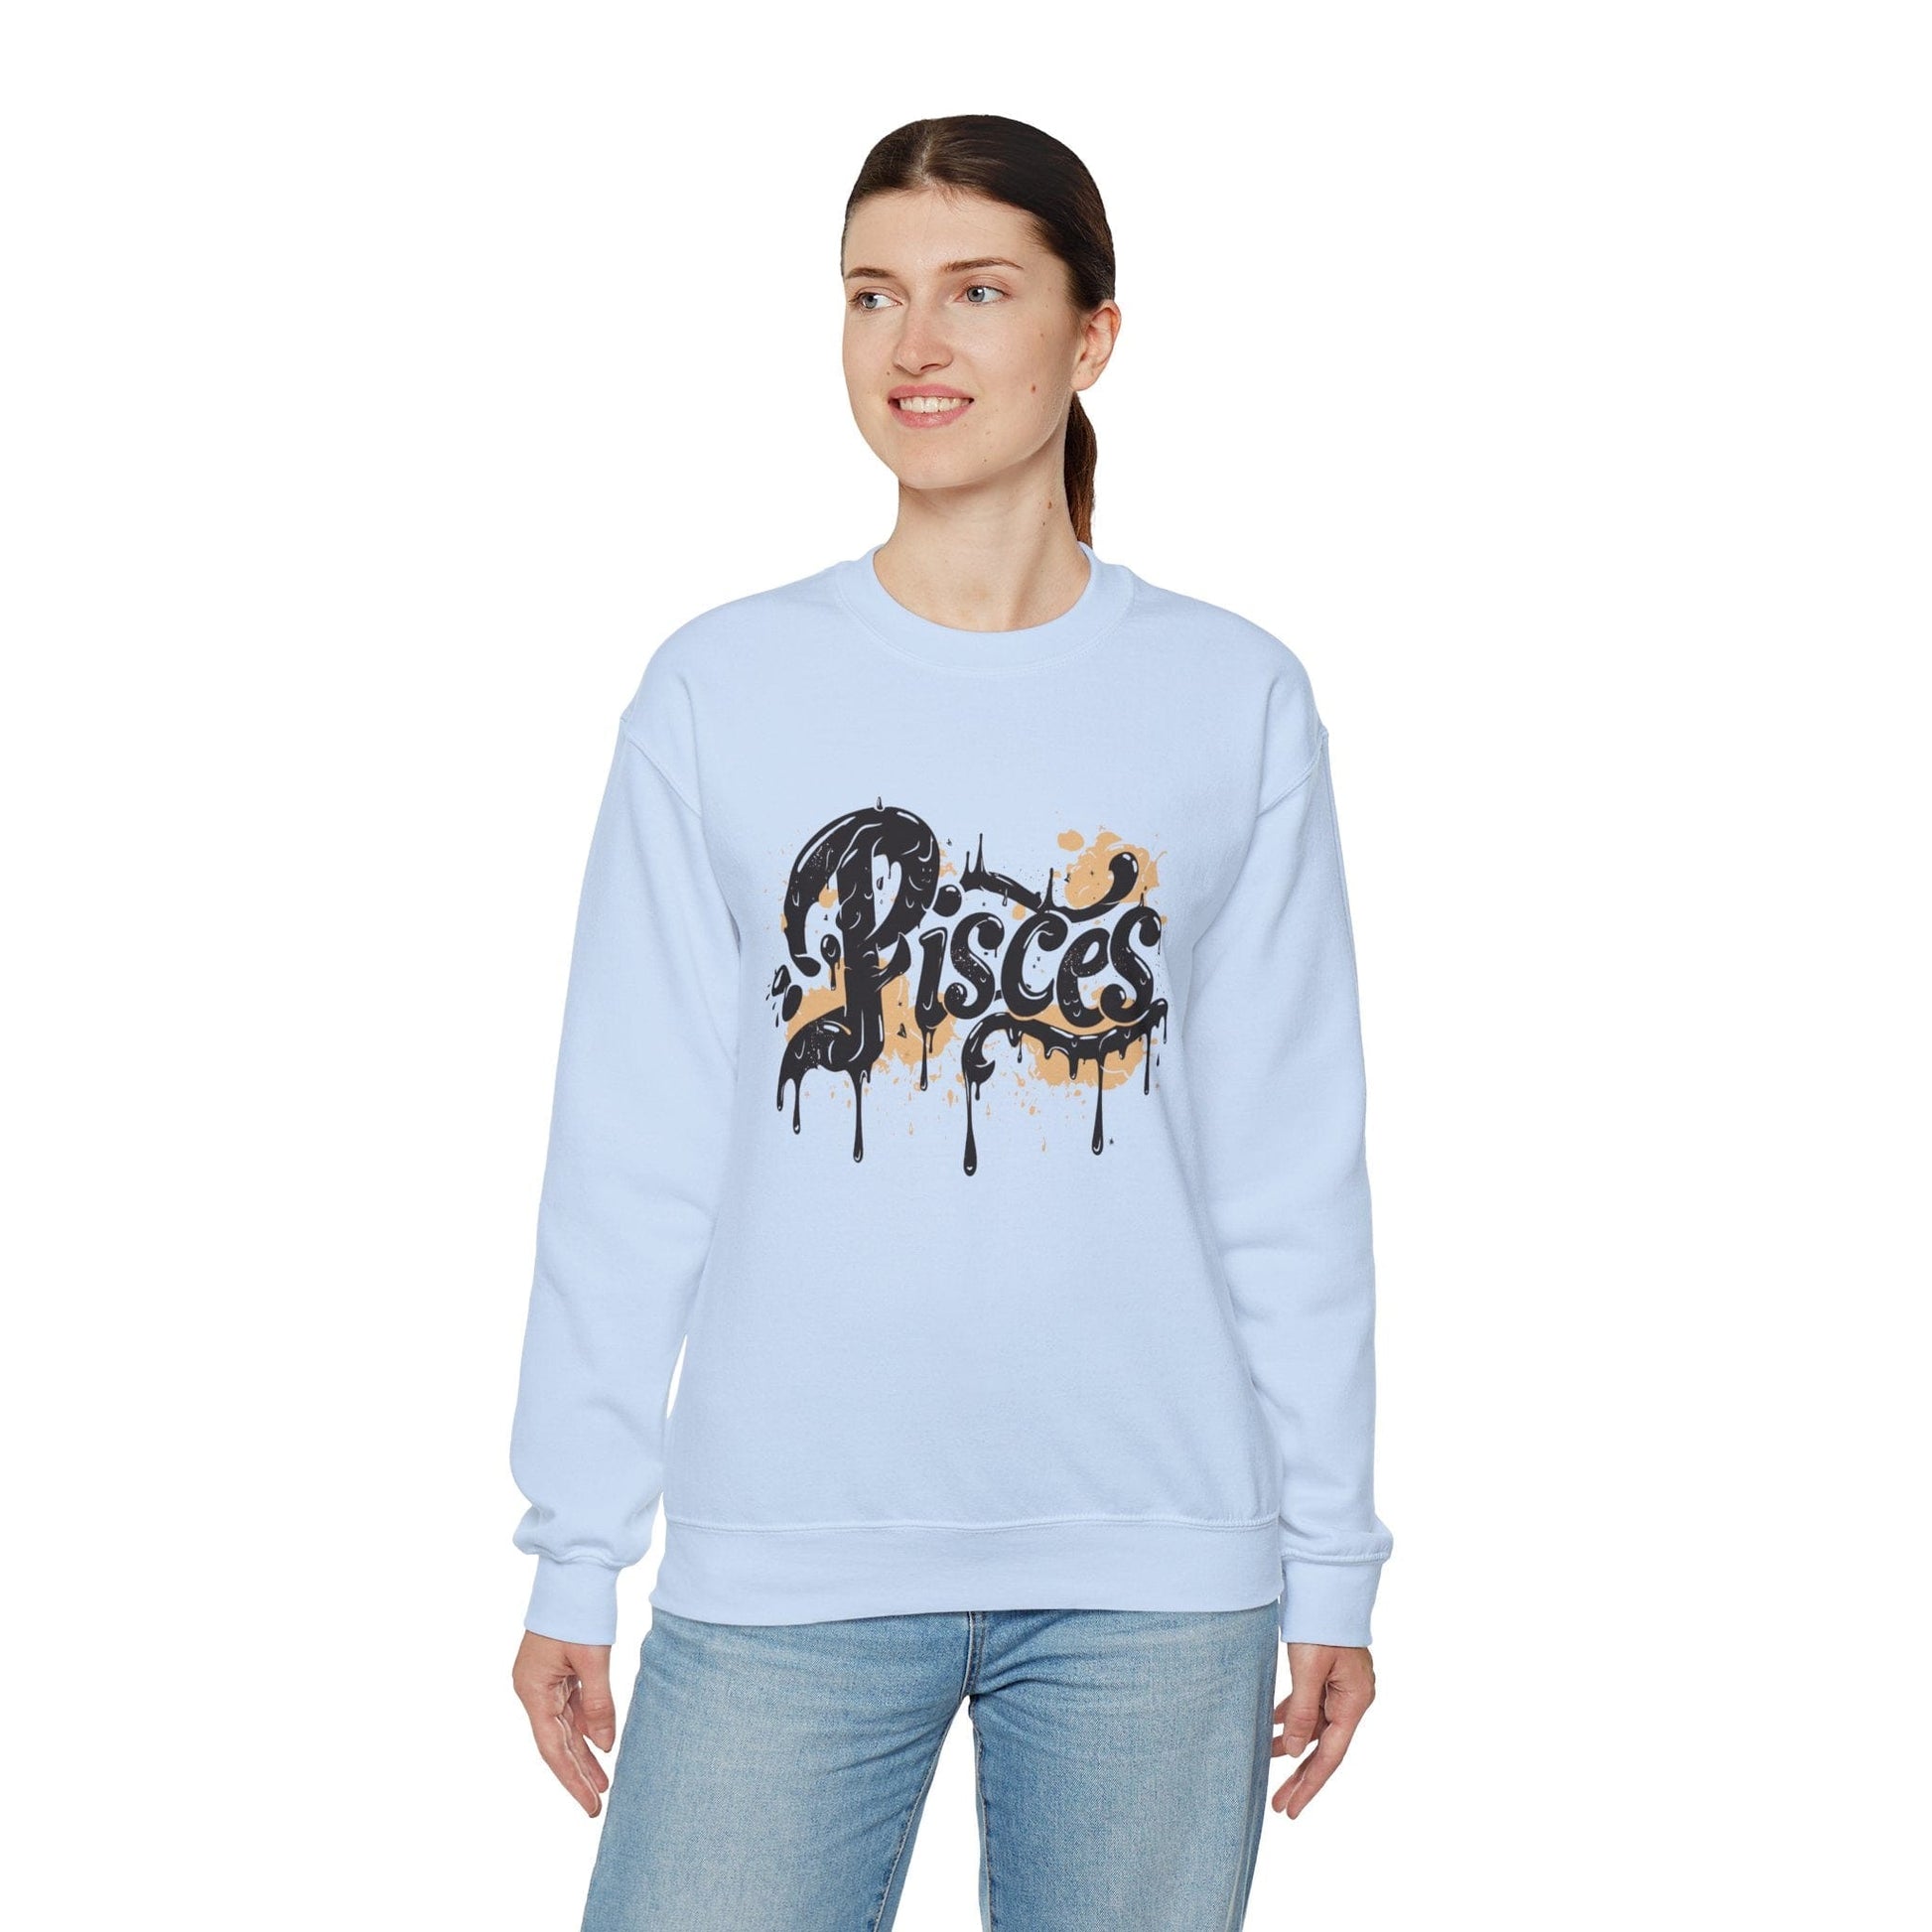 Sweatshirt Celestial Drift Pisces Sweater: Drift Through the Cosmos